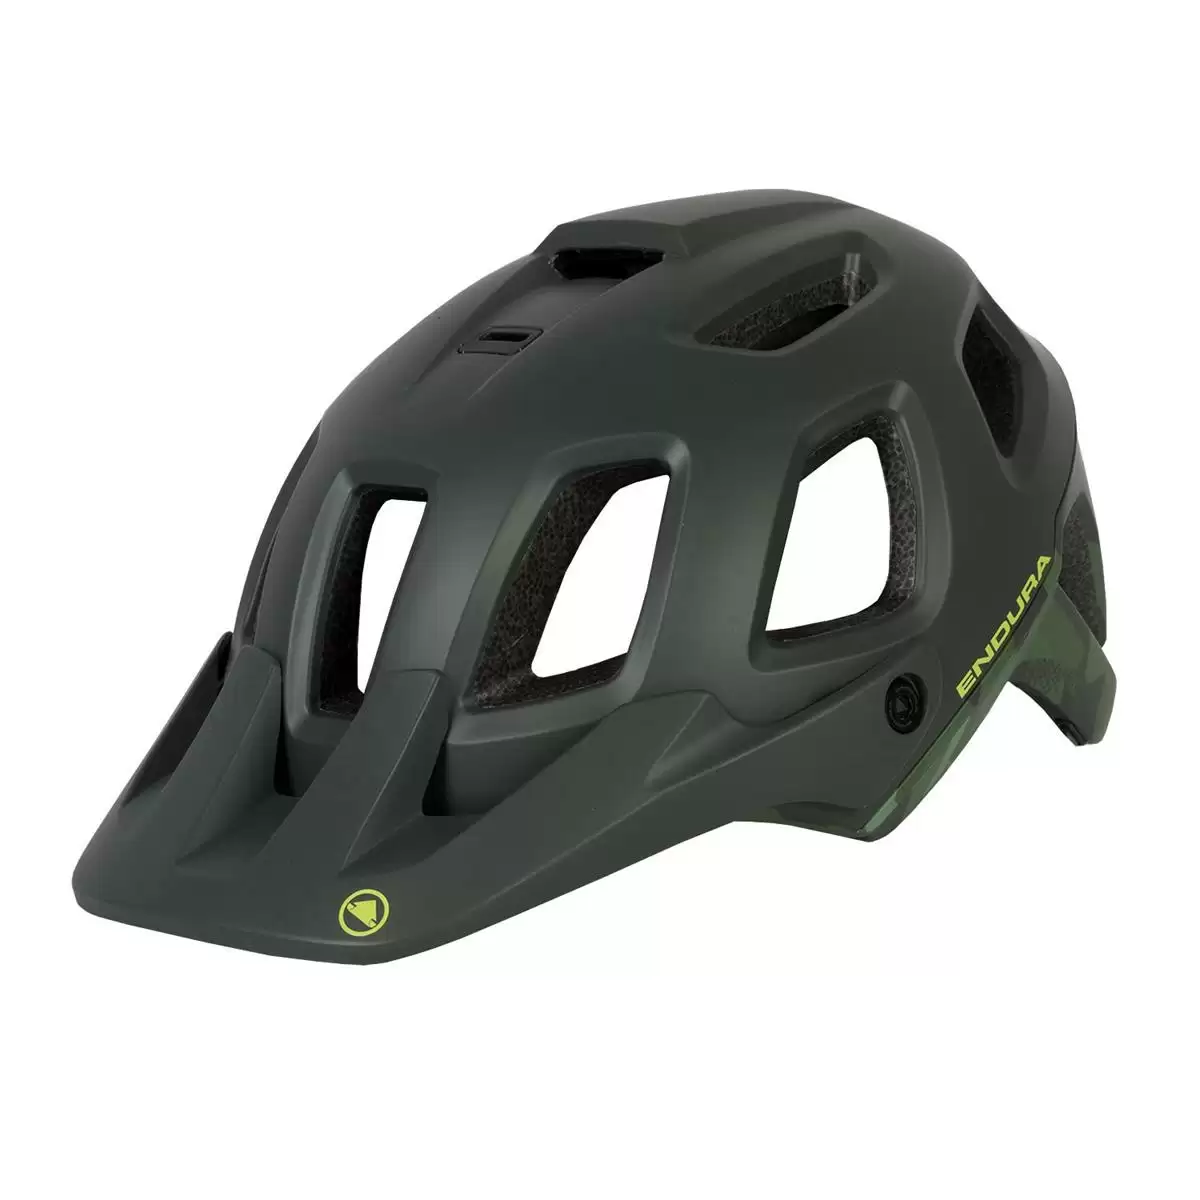 helmet SingleTrack Helmet II green size S/M (51-56cm) - image